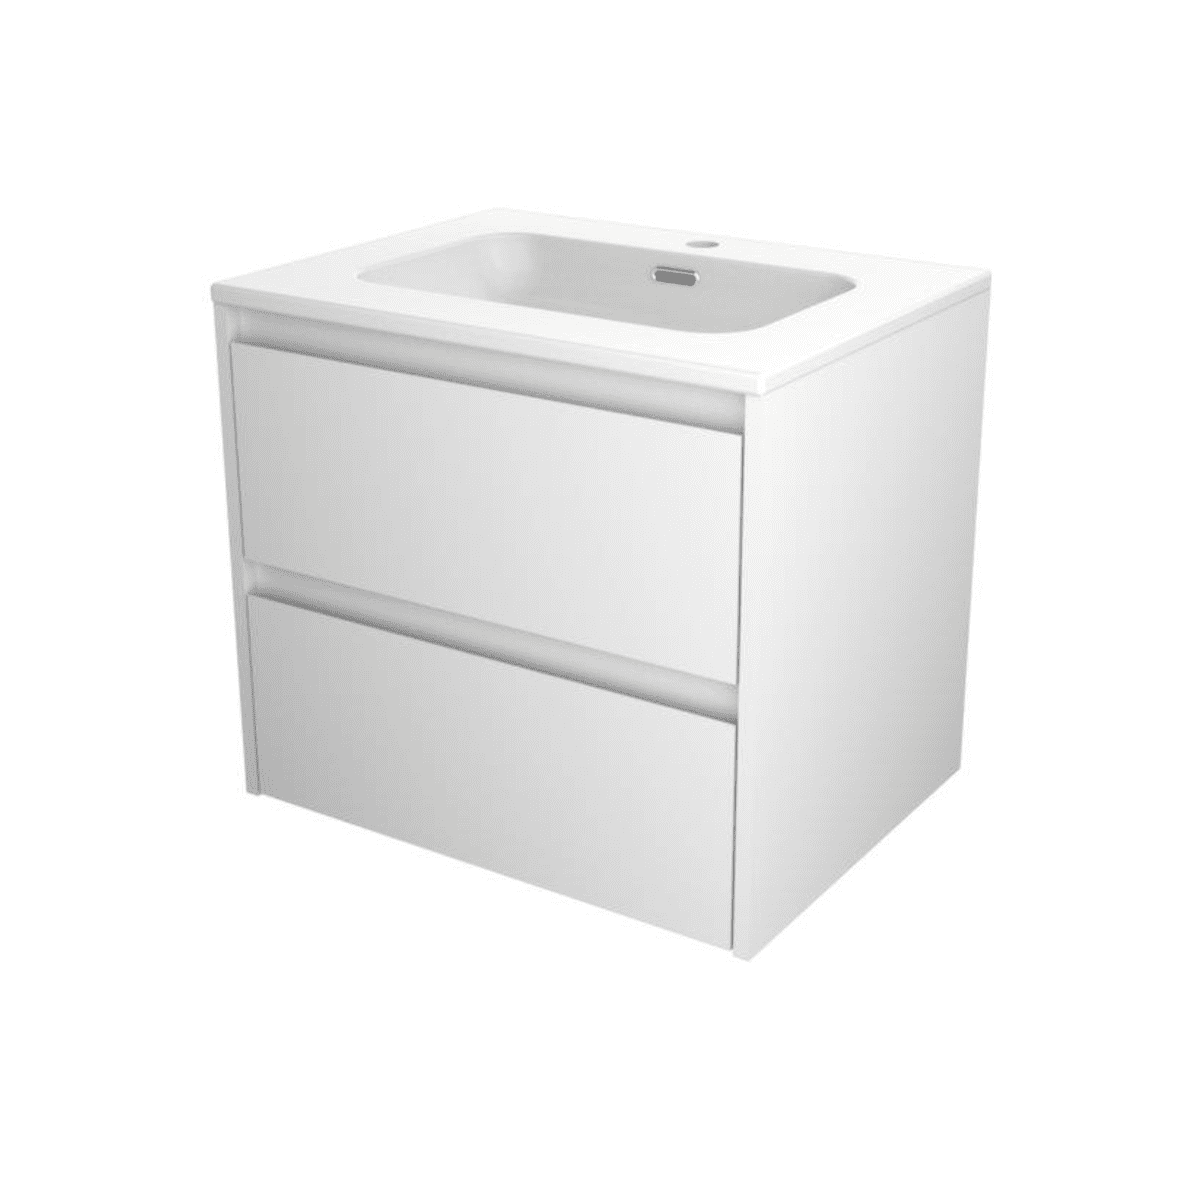 Billede af Sanibell Proline møbelpakke - 60x46cm - mat hvid